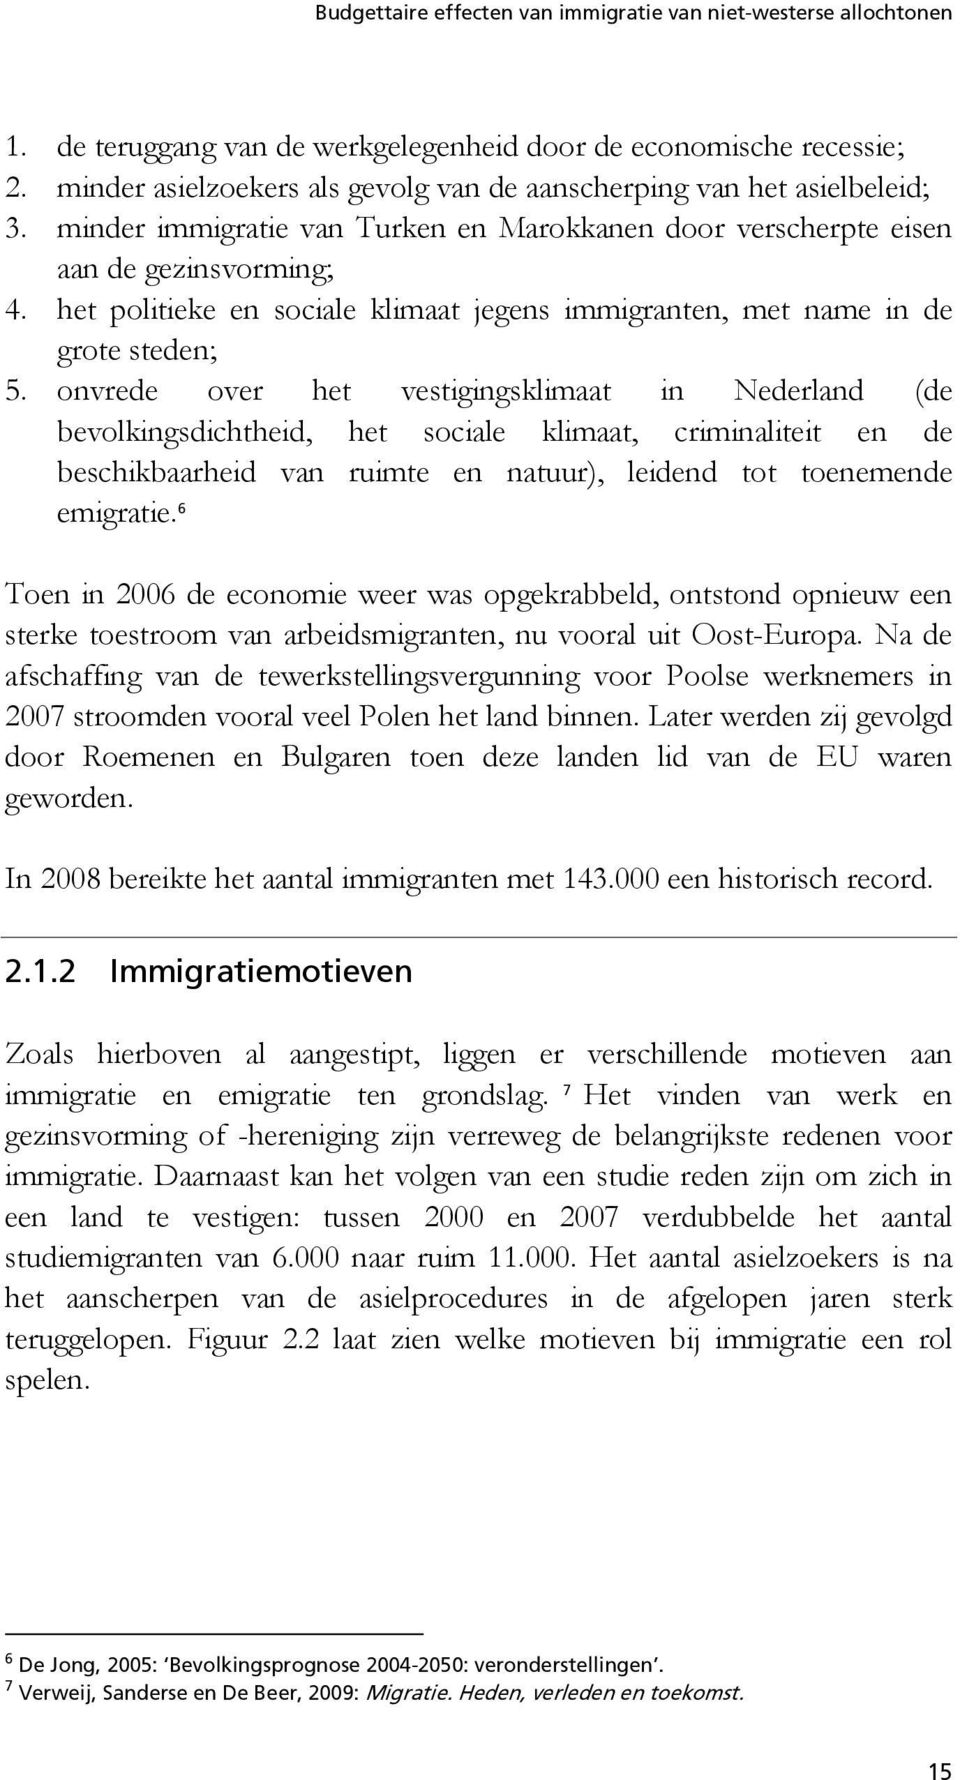 onvrede over het vestigingsklimaat in Nederland (de bevolkingsdichtheid, het sociale klimaat, criminaliteit en de beschikbaarheid van ruimte en natuur), leidend tot toenemende emigratie.